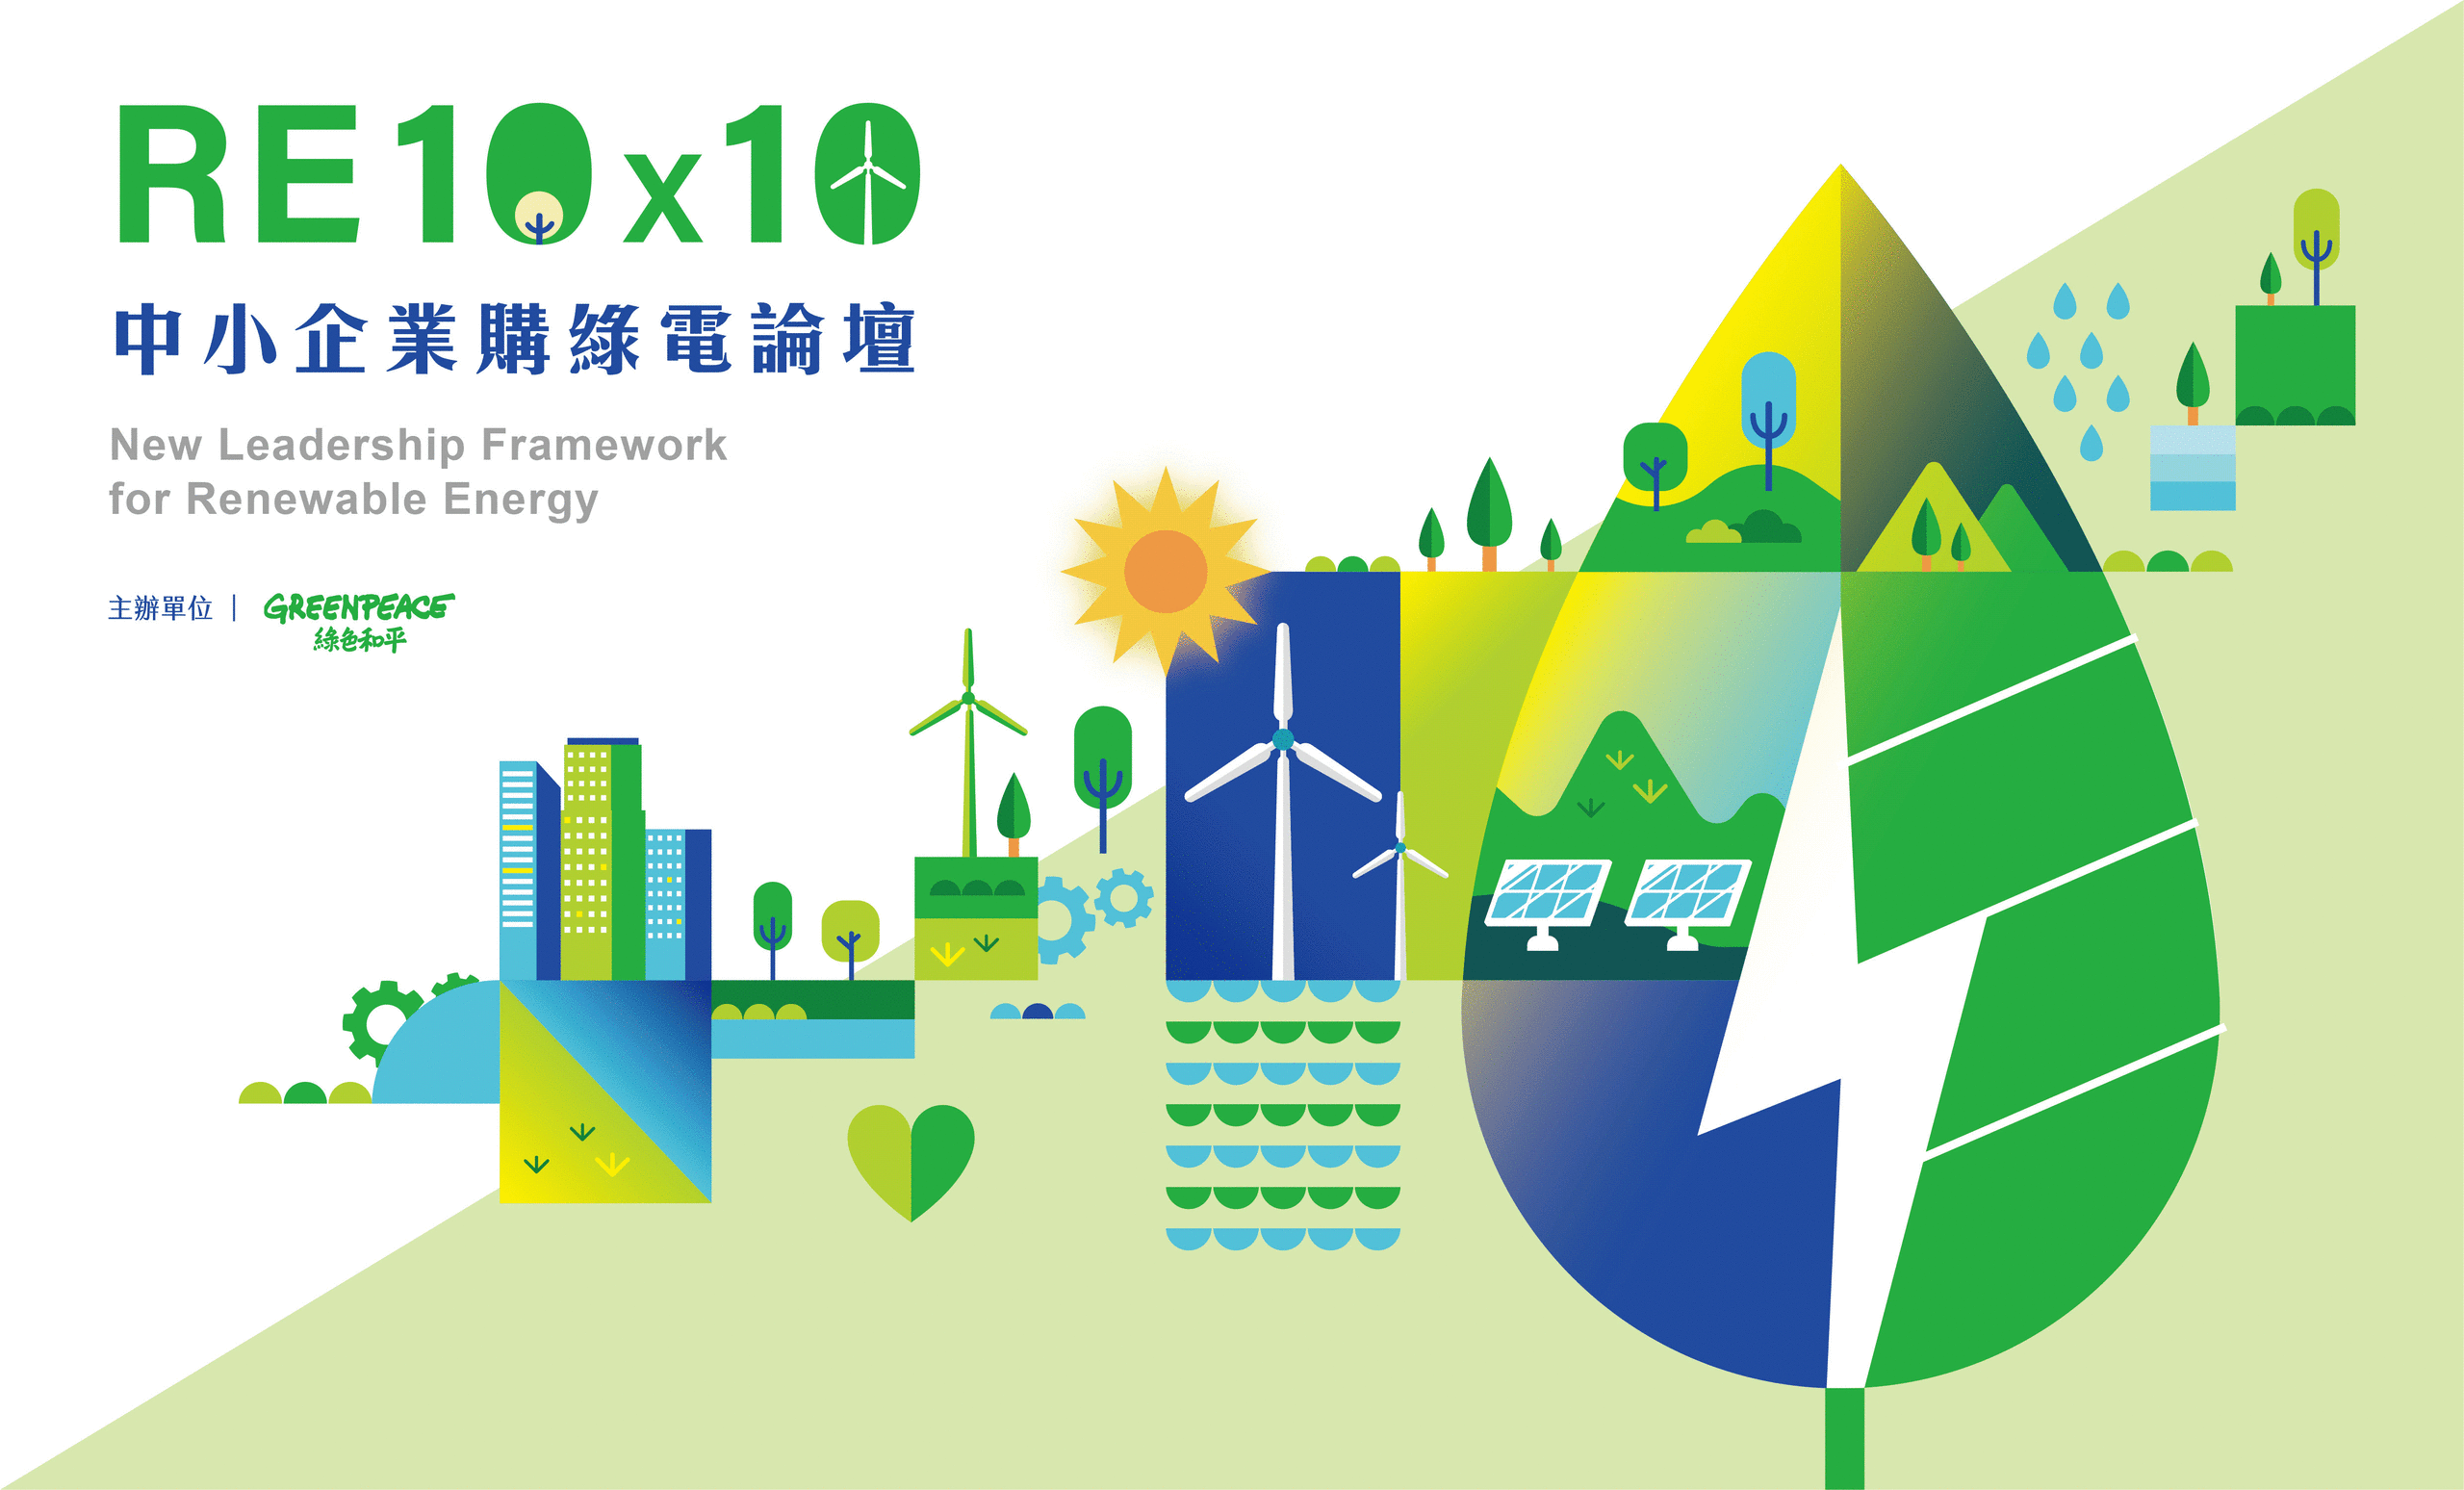 綠色和平主辦「RE10x10 中小企業購綠電論壇」，有14 家企業共同承諾 2025 年前將使用 10% 以上綠電，跟上國際趨勢，能源轉型不再遙不可及。